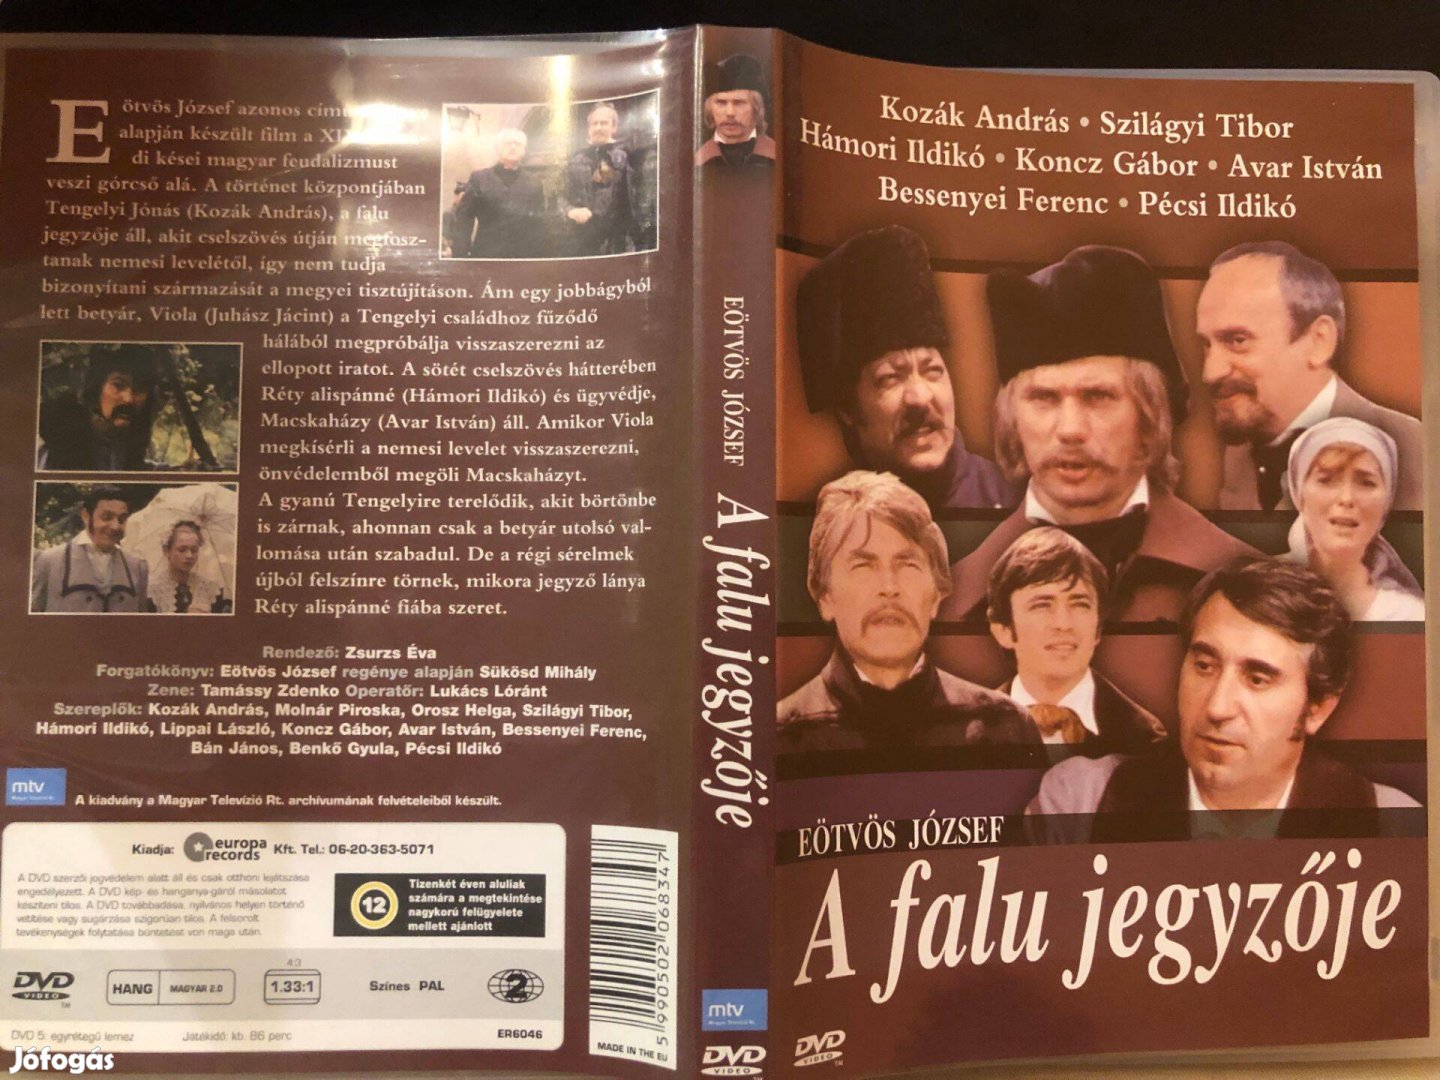 A falu jegyzője (karcmentes, Szilágyi Tibor) DVD